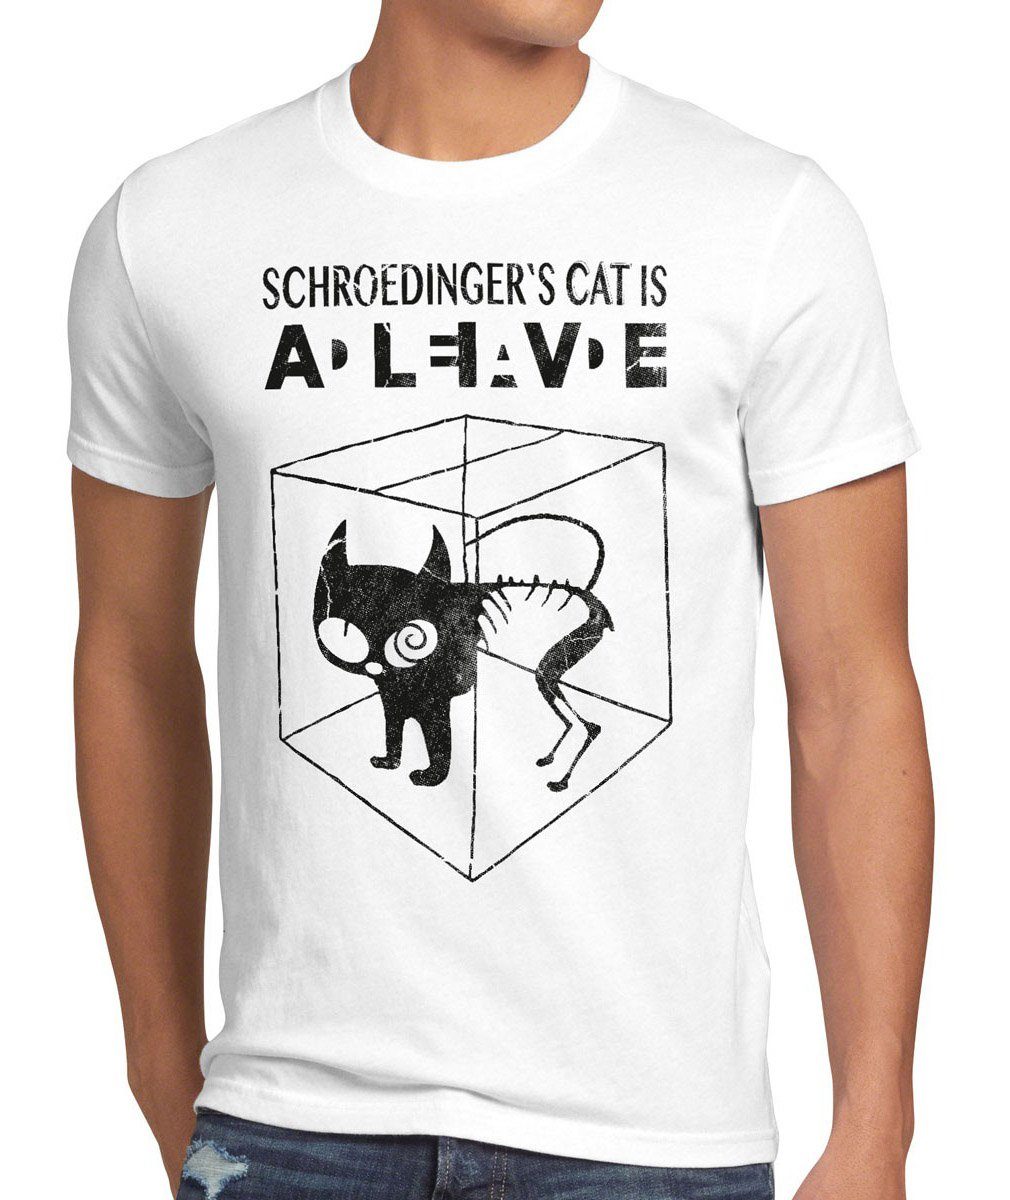 style3 Print-Shirt Herren T-Shirt Schroedinger's Katze Big Bang Sheldon schrödingers Theory cat neu weiß